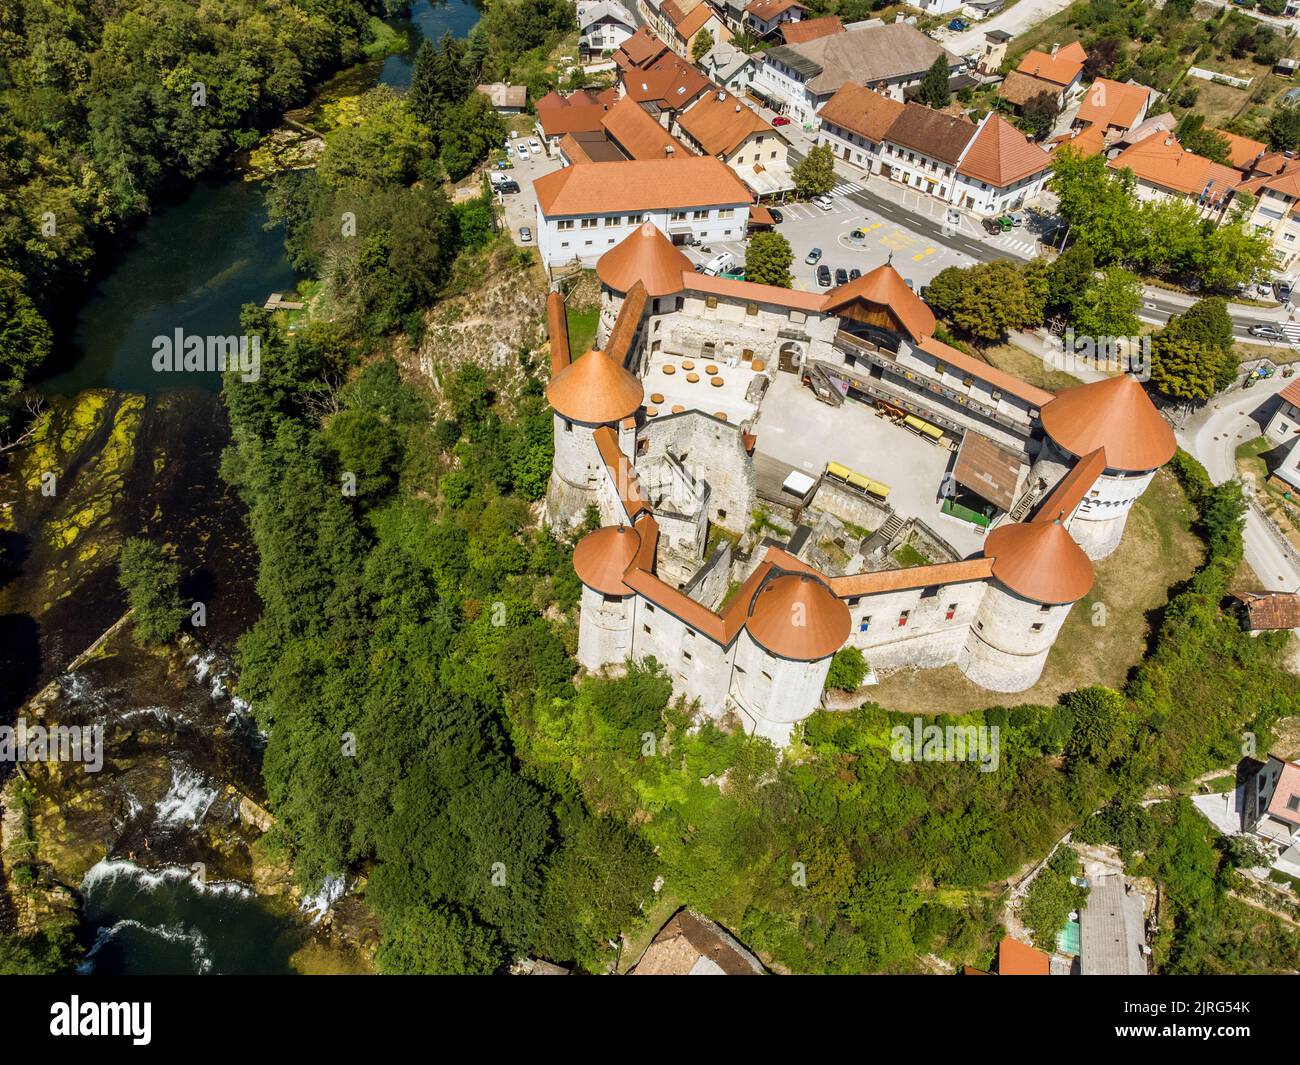 Vista aerea del castello medievale di zuzemberk o Seisenburg o Sosenberch, situato sulla terrazza sopra il canyon del fiume Krka, Slovenia centrale. Foto Stock